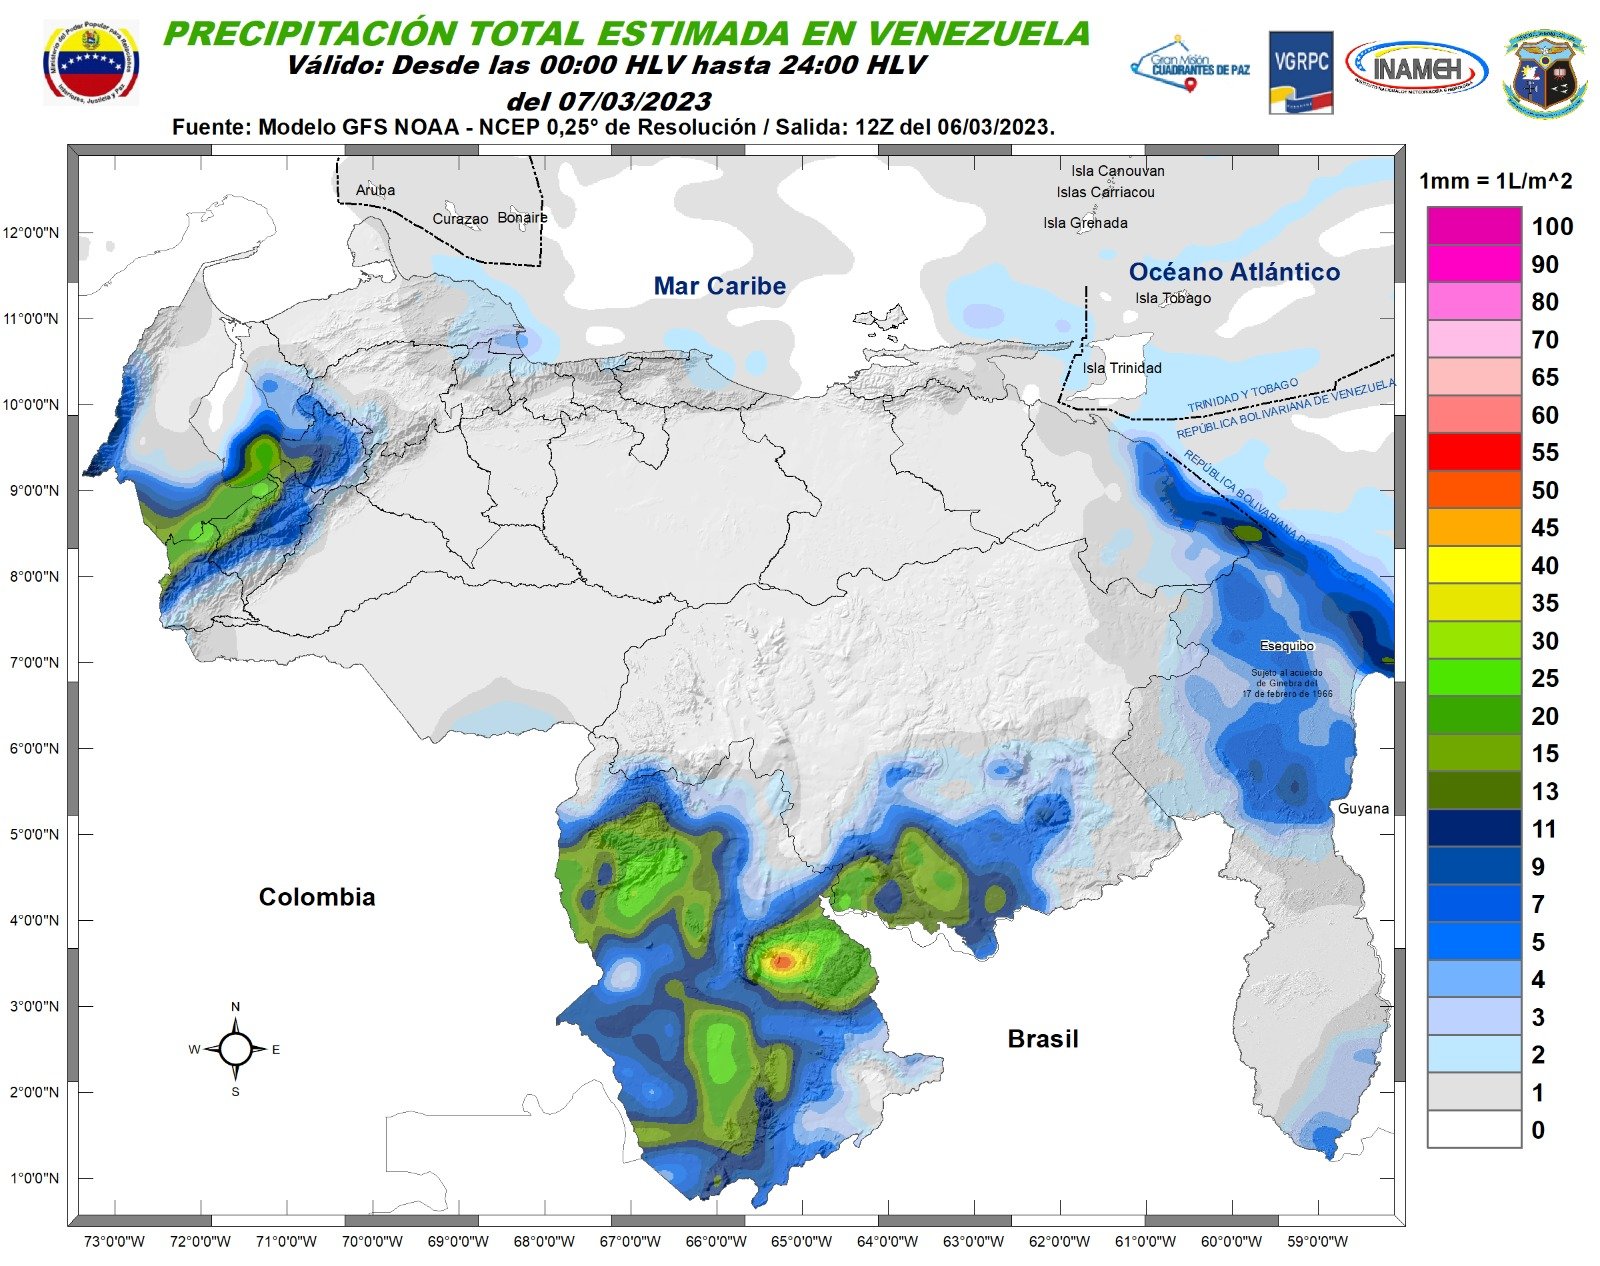 Inameh prevé lluvias y descargas eléctricas en algunas regiones de Venezuela este #7Mar